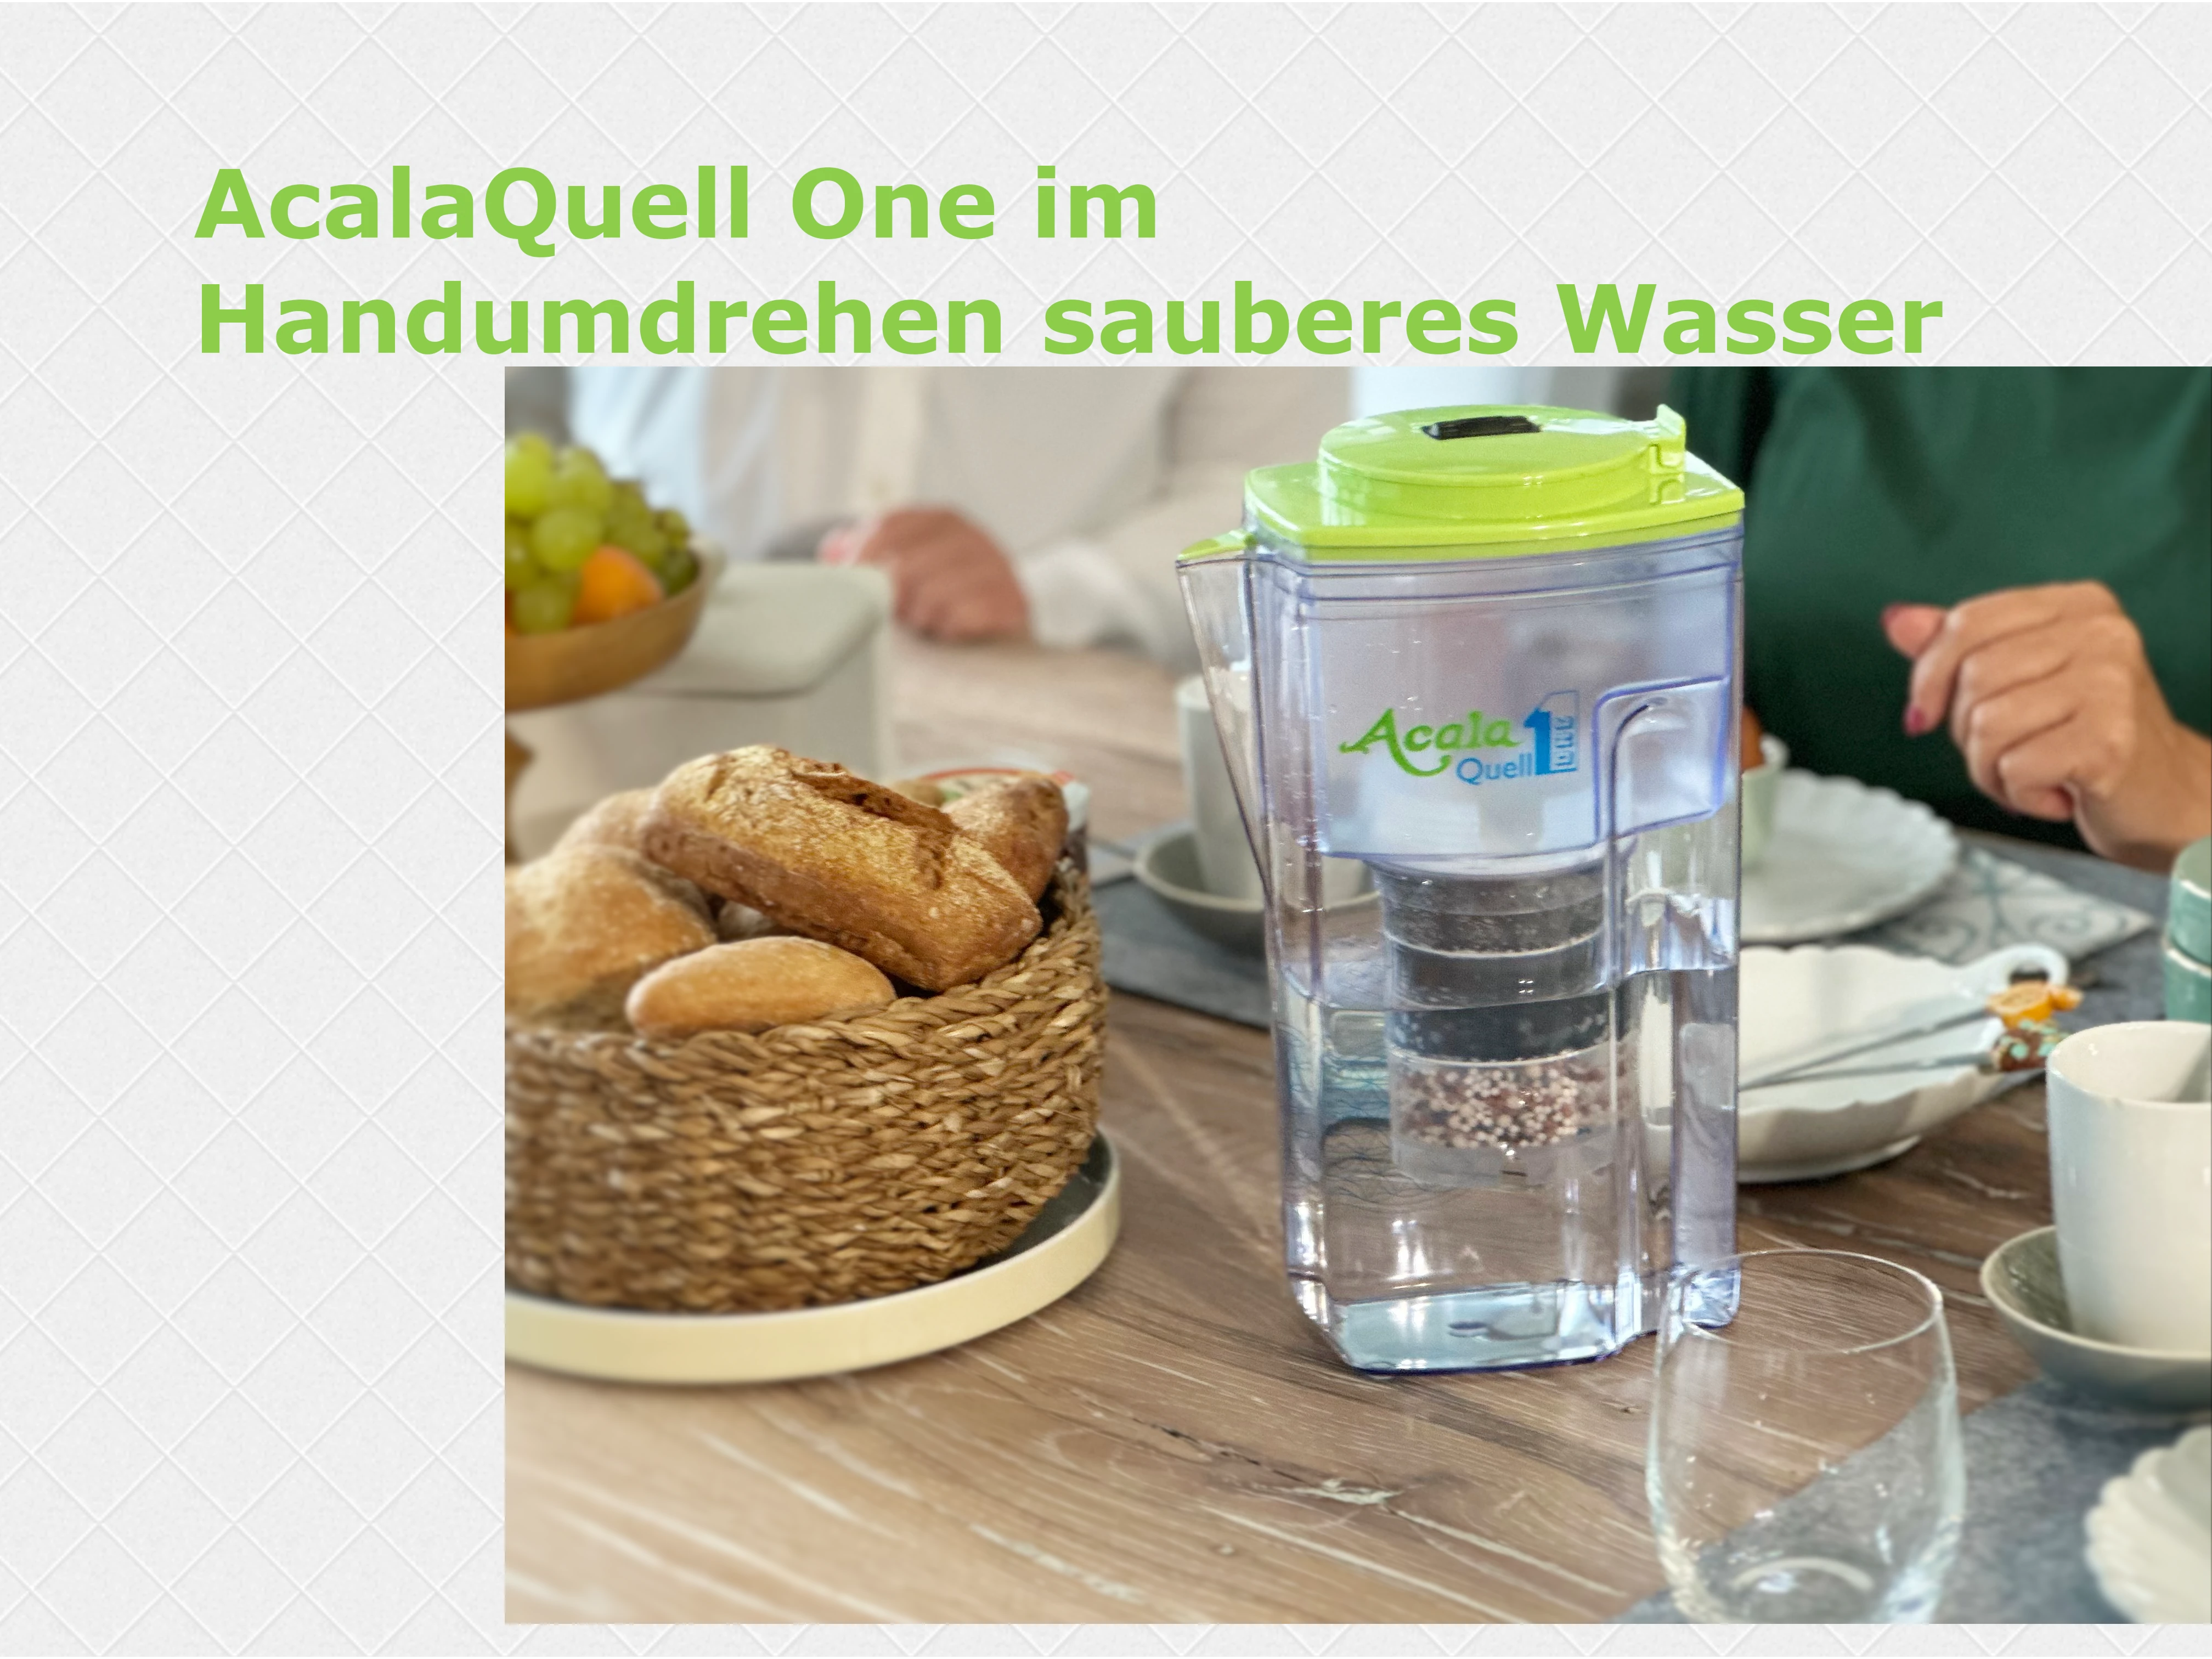 Zu sehen ist der AcalaQuell ONE Kannen Wasserfilter mit Deckel in grün. Er steht auf einem gedeckten Frühstückstisch, im Hintergrund sieht man Personen.